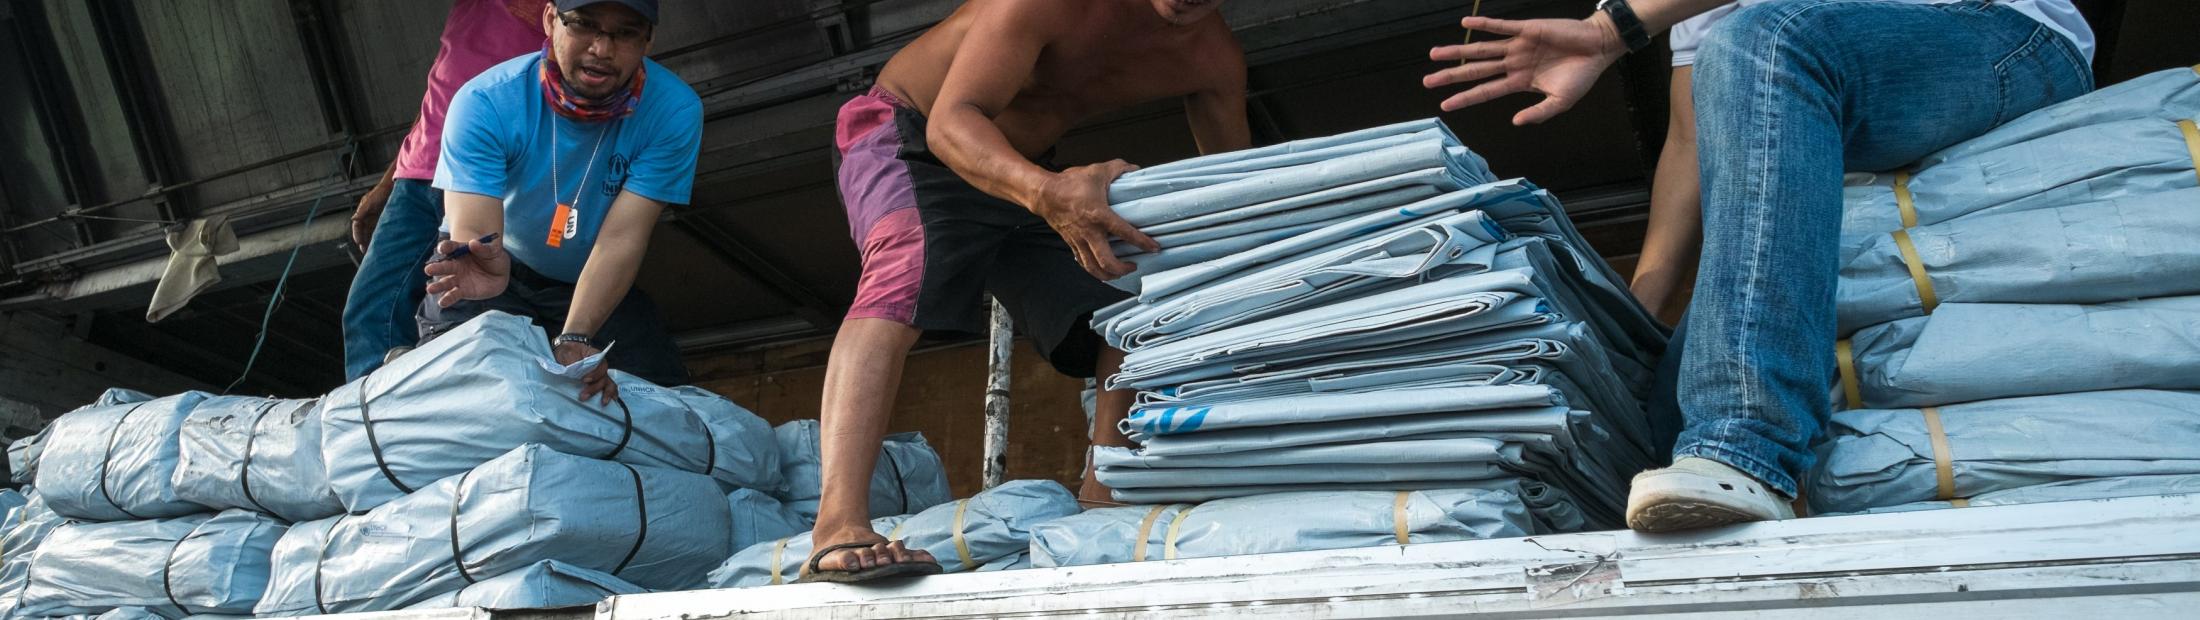  Tifón Haiyán: surgen nuevas necesidades a medida que las comunidades desplazadas tratan de rehacer sus vidas